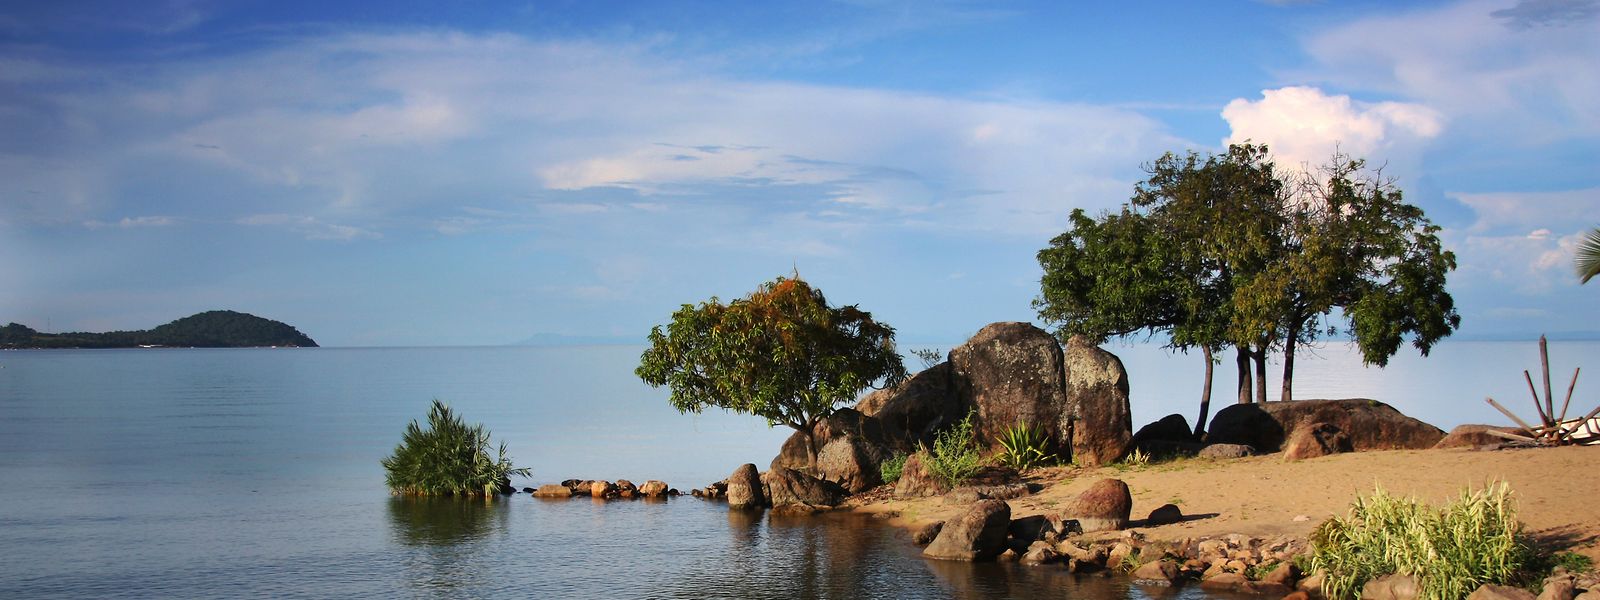 Der Malawisee ist einer der ältesten Seen der Erde.